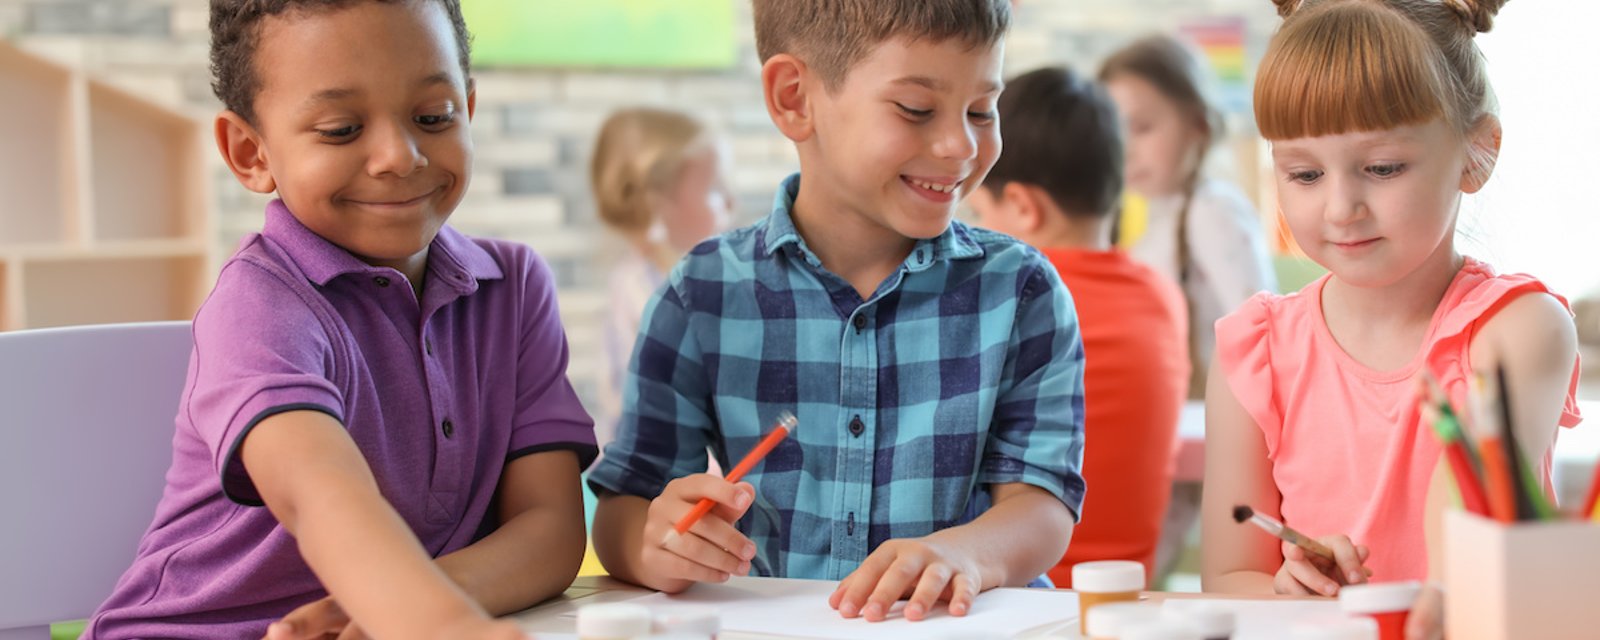 10 choses que vous devriez apprendre à votre enfant avant son entrée à la maternelle, selon des enseignants.